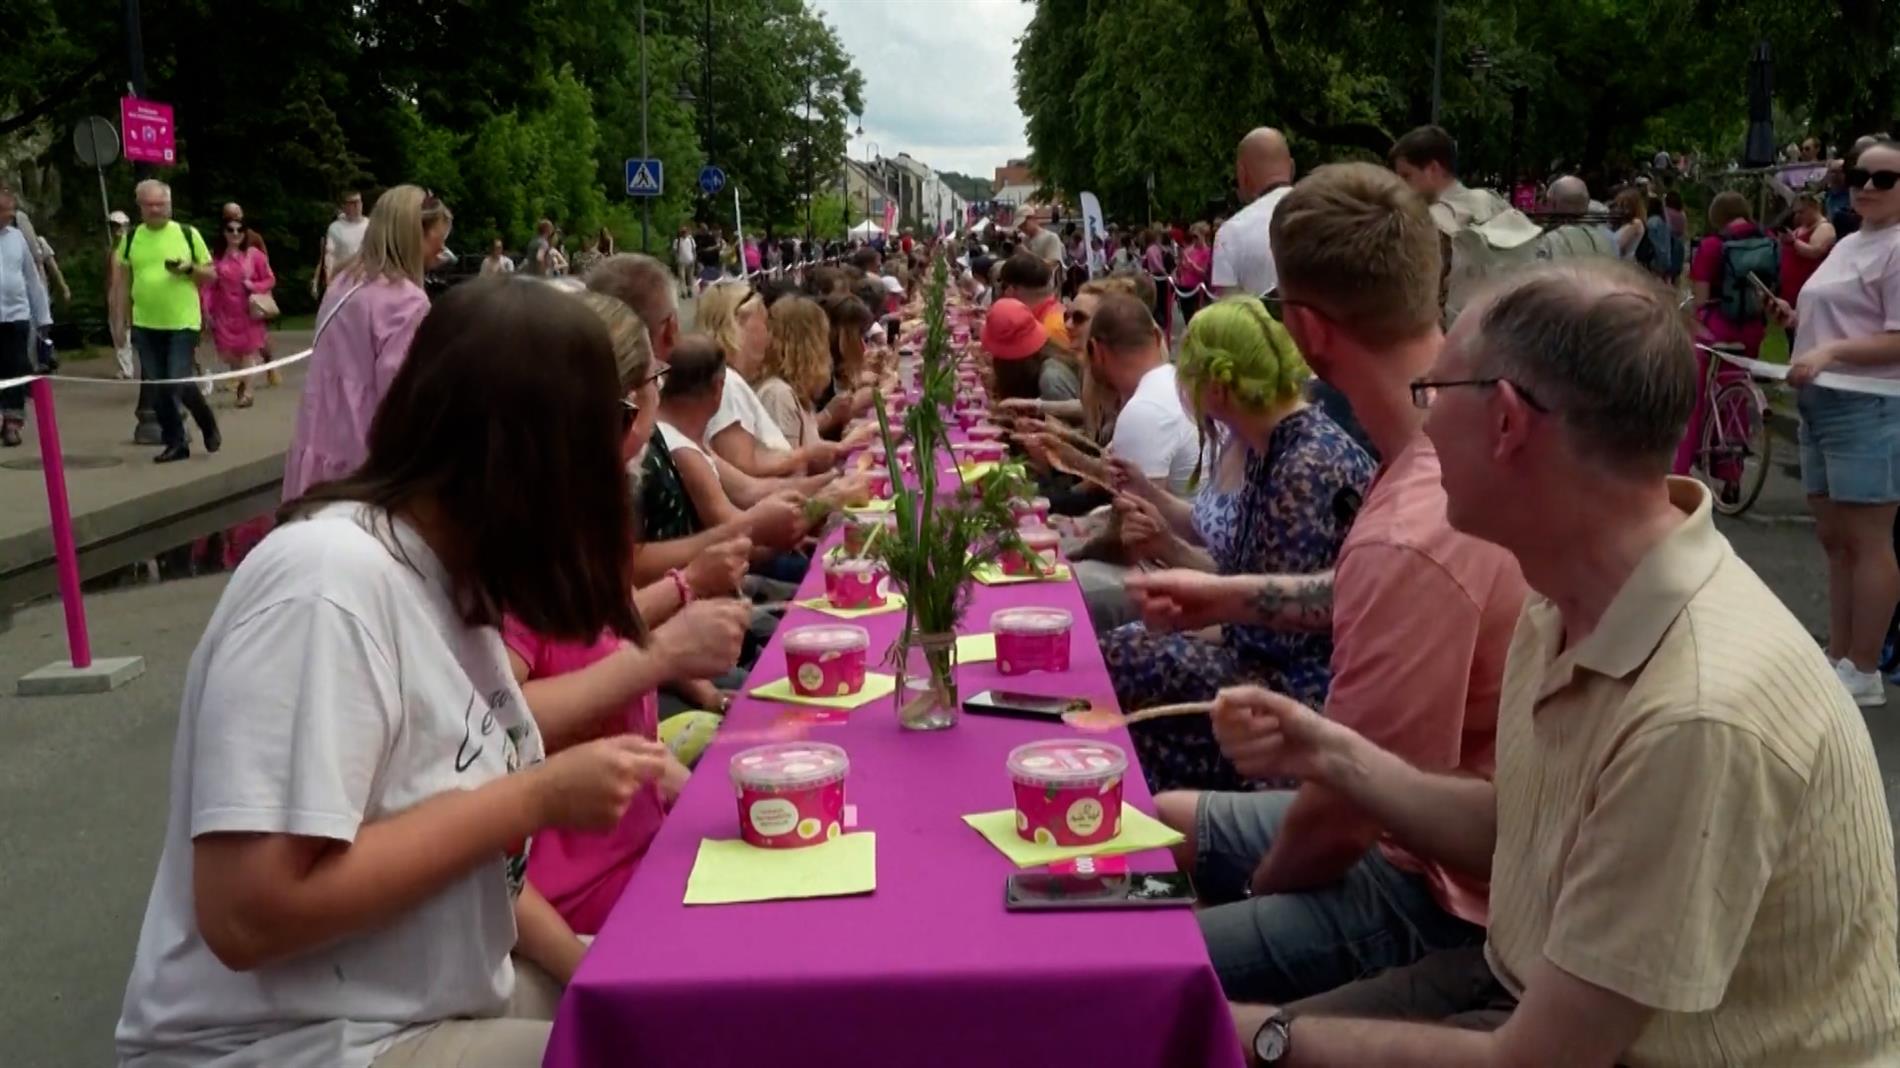 Λιθουανία: Εκατοντάδες άνθρωποι φόρεσαν ροζ και γιόρτασαν στο παραδοσιακό φεστιβάλ παντζαριού